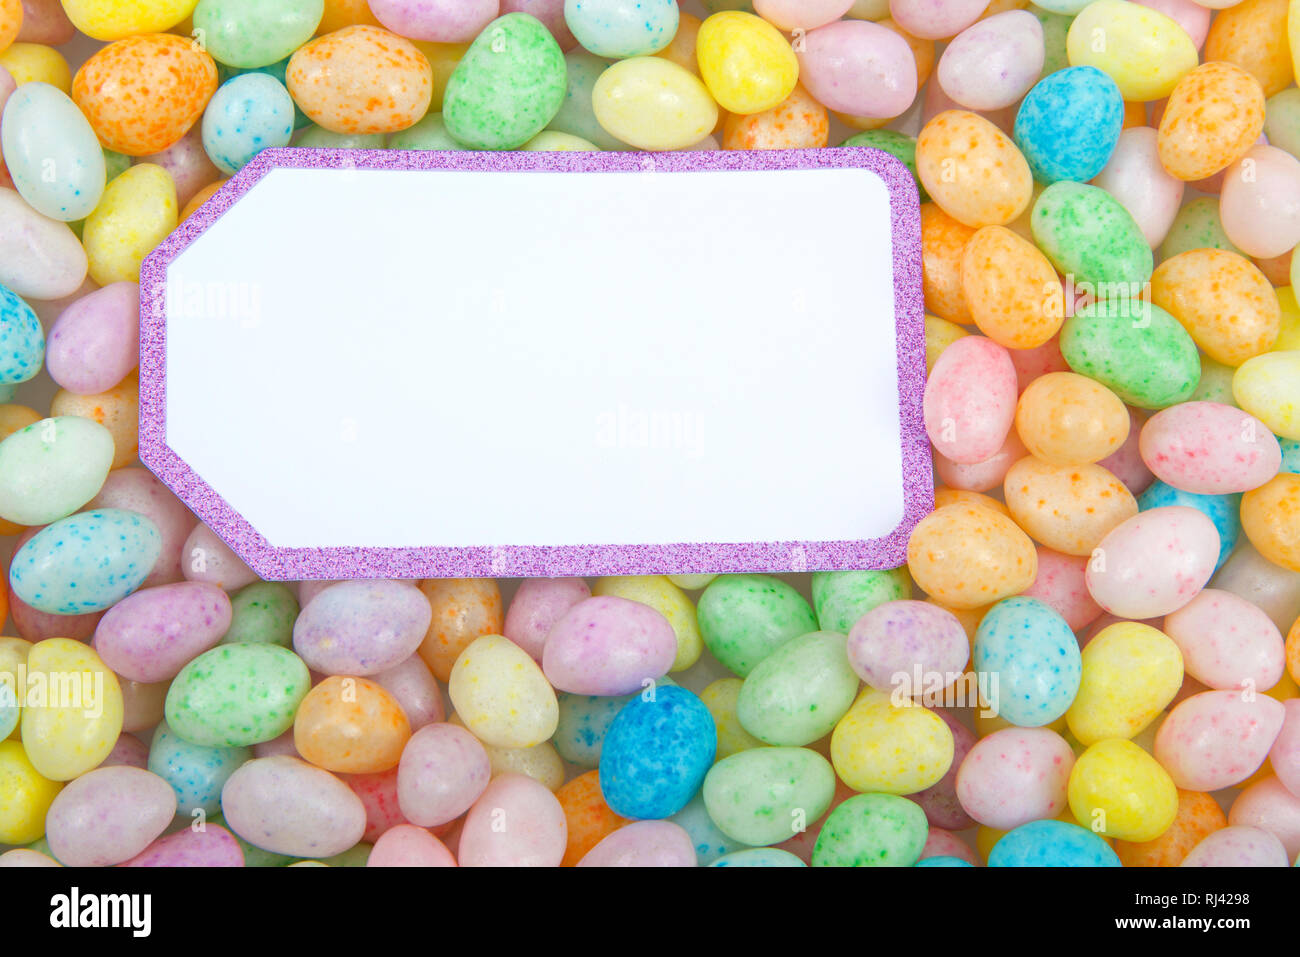 Muchos coloridos caramelos Jelly Beans en una superficie plana, tarjeta blanca con borde púrpura brillante espacio de copia. Tema de Pascua Foto de stock